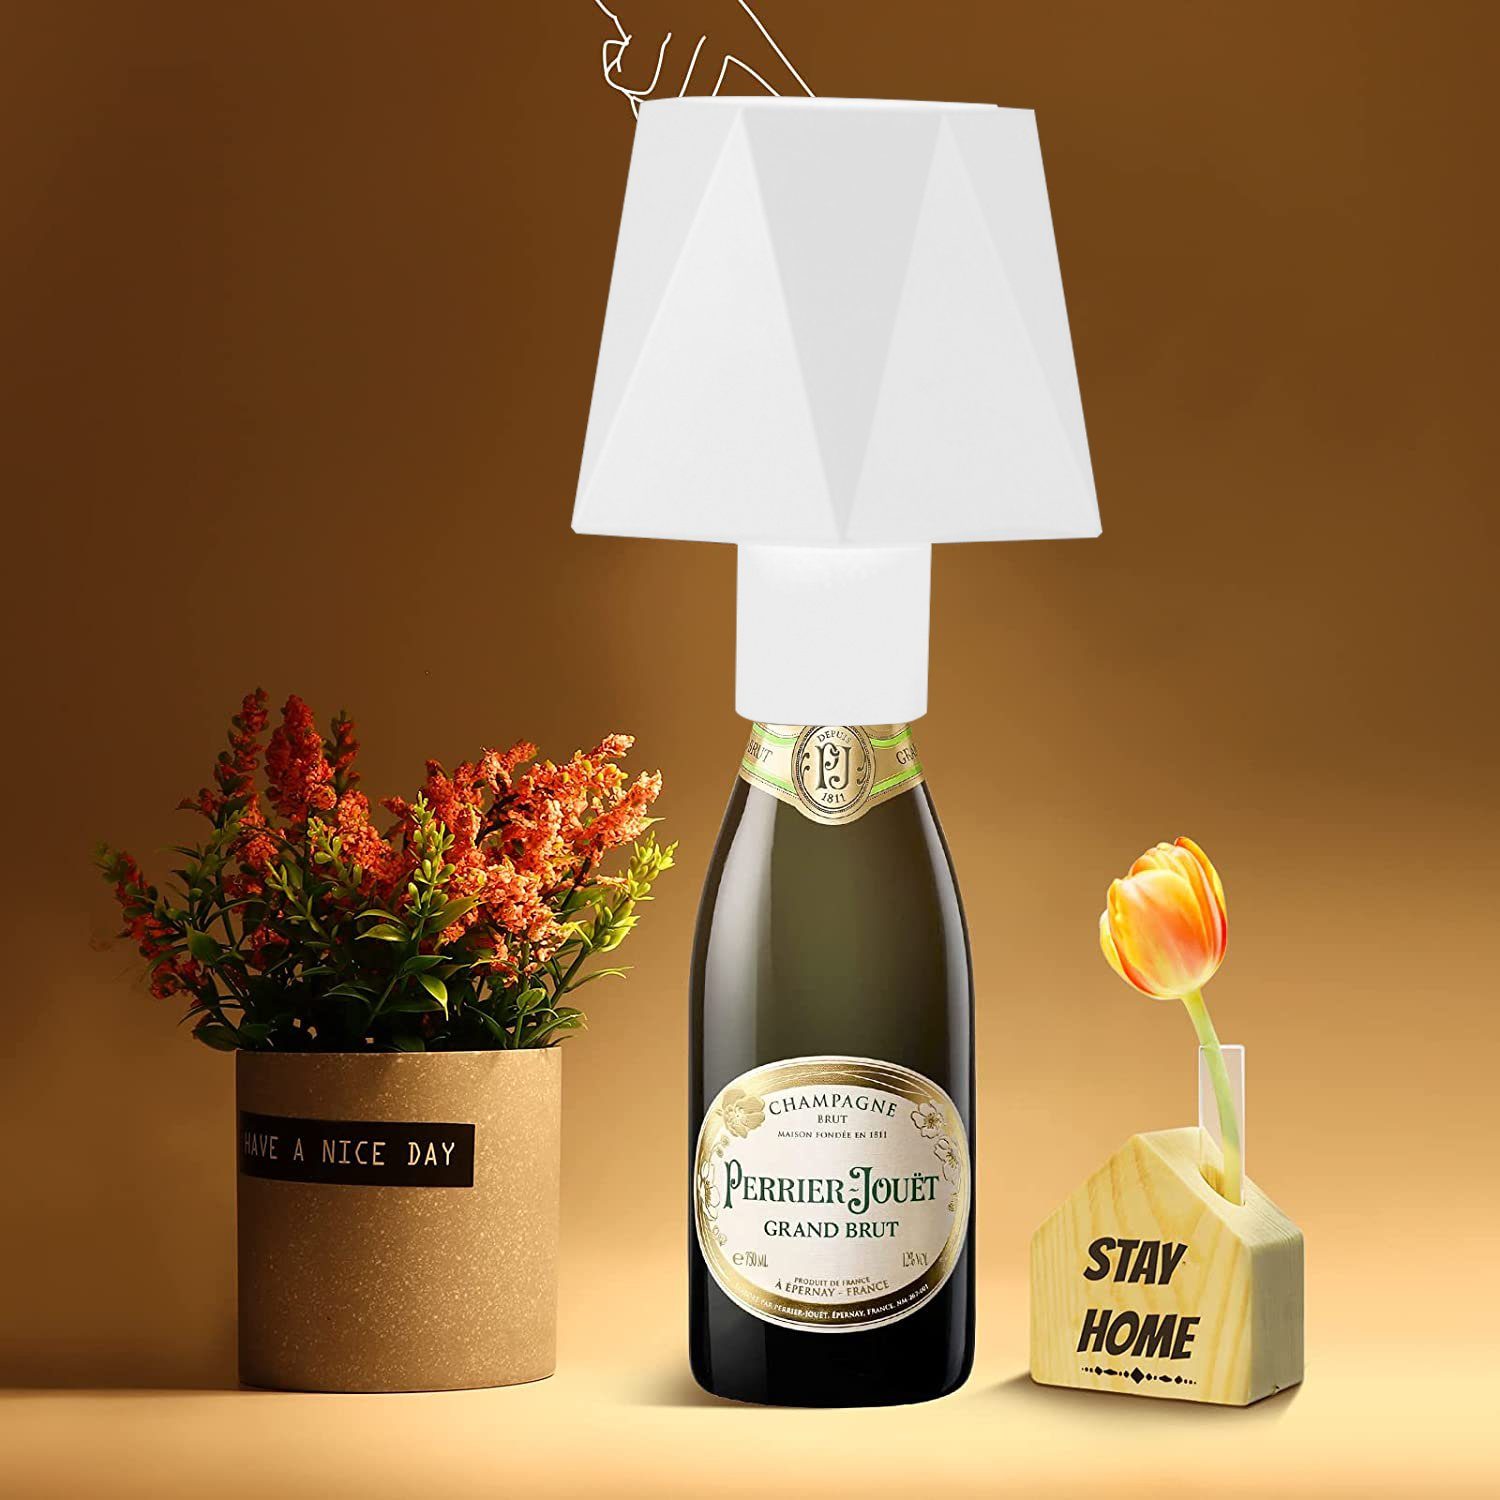 KUGI LED Nachttischlampe LEDTischleuchte Dimmbare Flaschenlampe Akku, Bar-Restaurant-Atmosphärenlicht,Weinkopf-Nachtlicht, tragbare kreative tragbare Ladeschreibtischlampe, Modern Creative Tischleuchte Kabellos Weinflaschenlicht